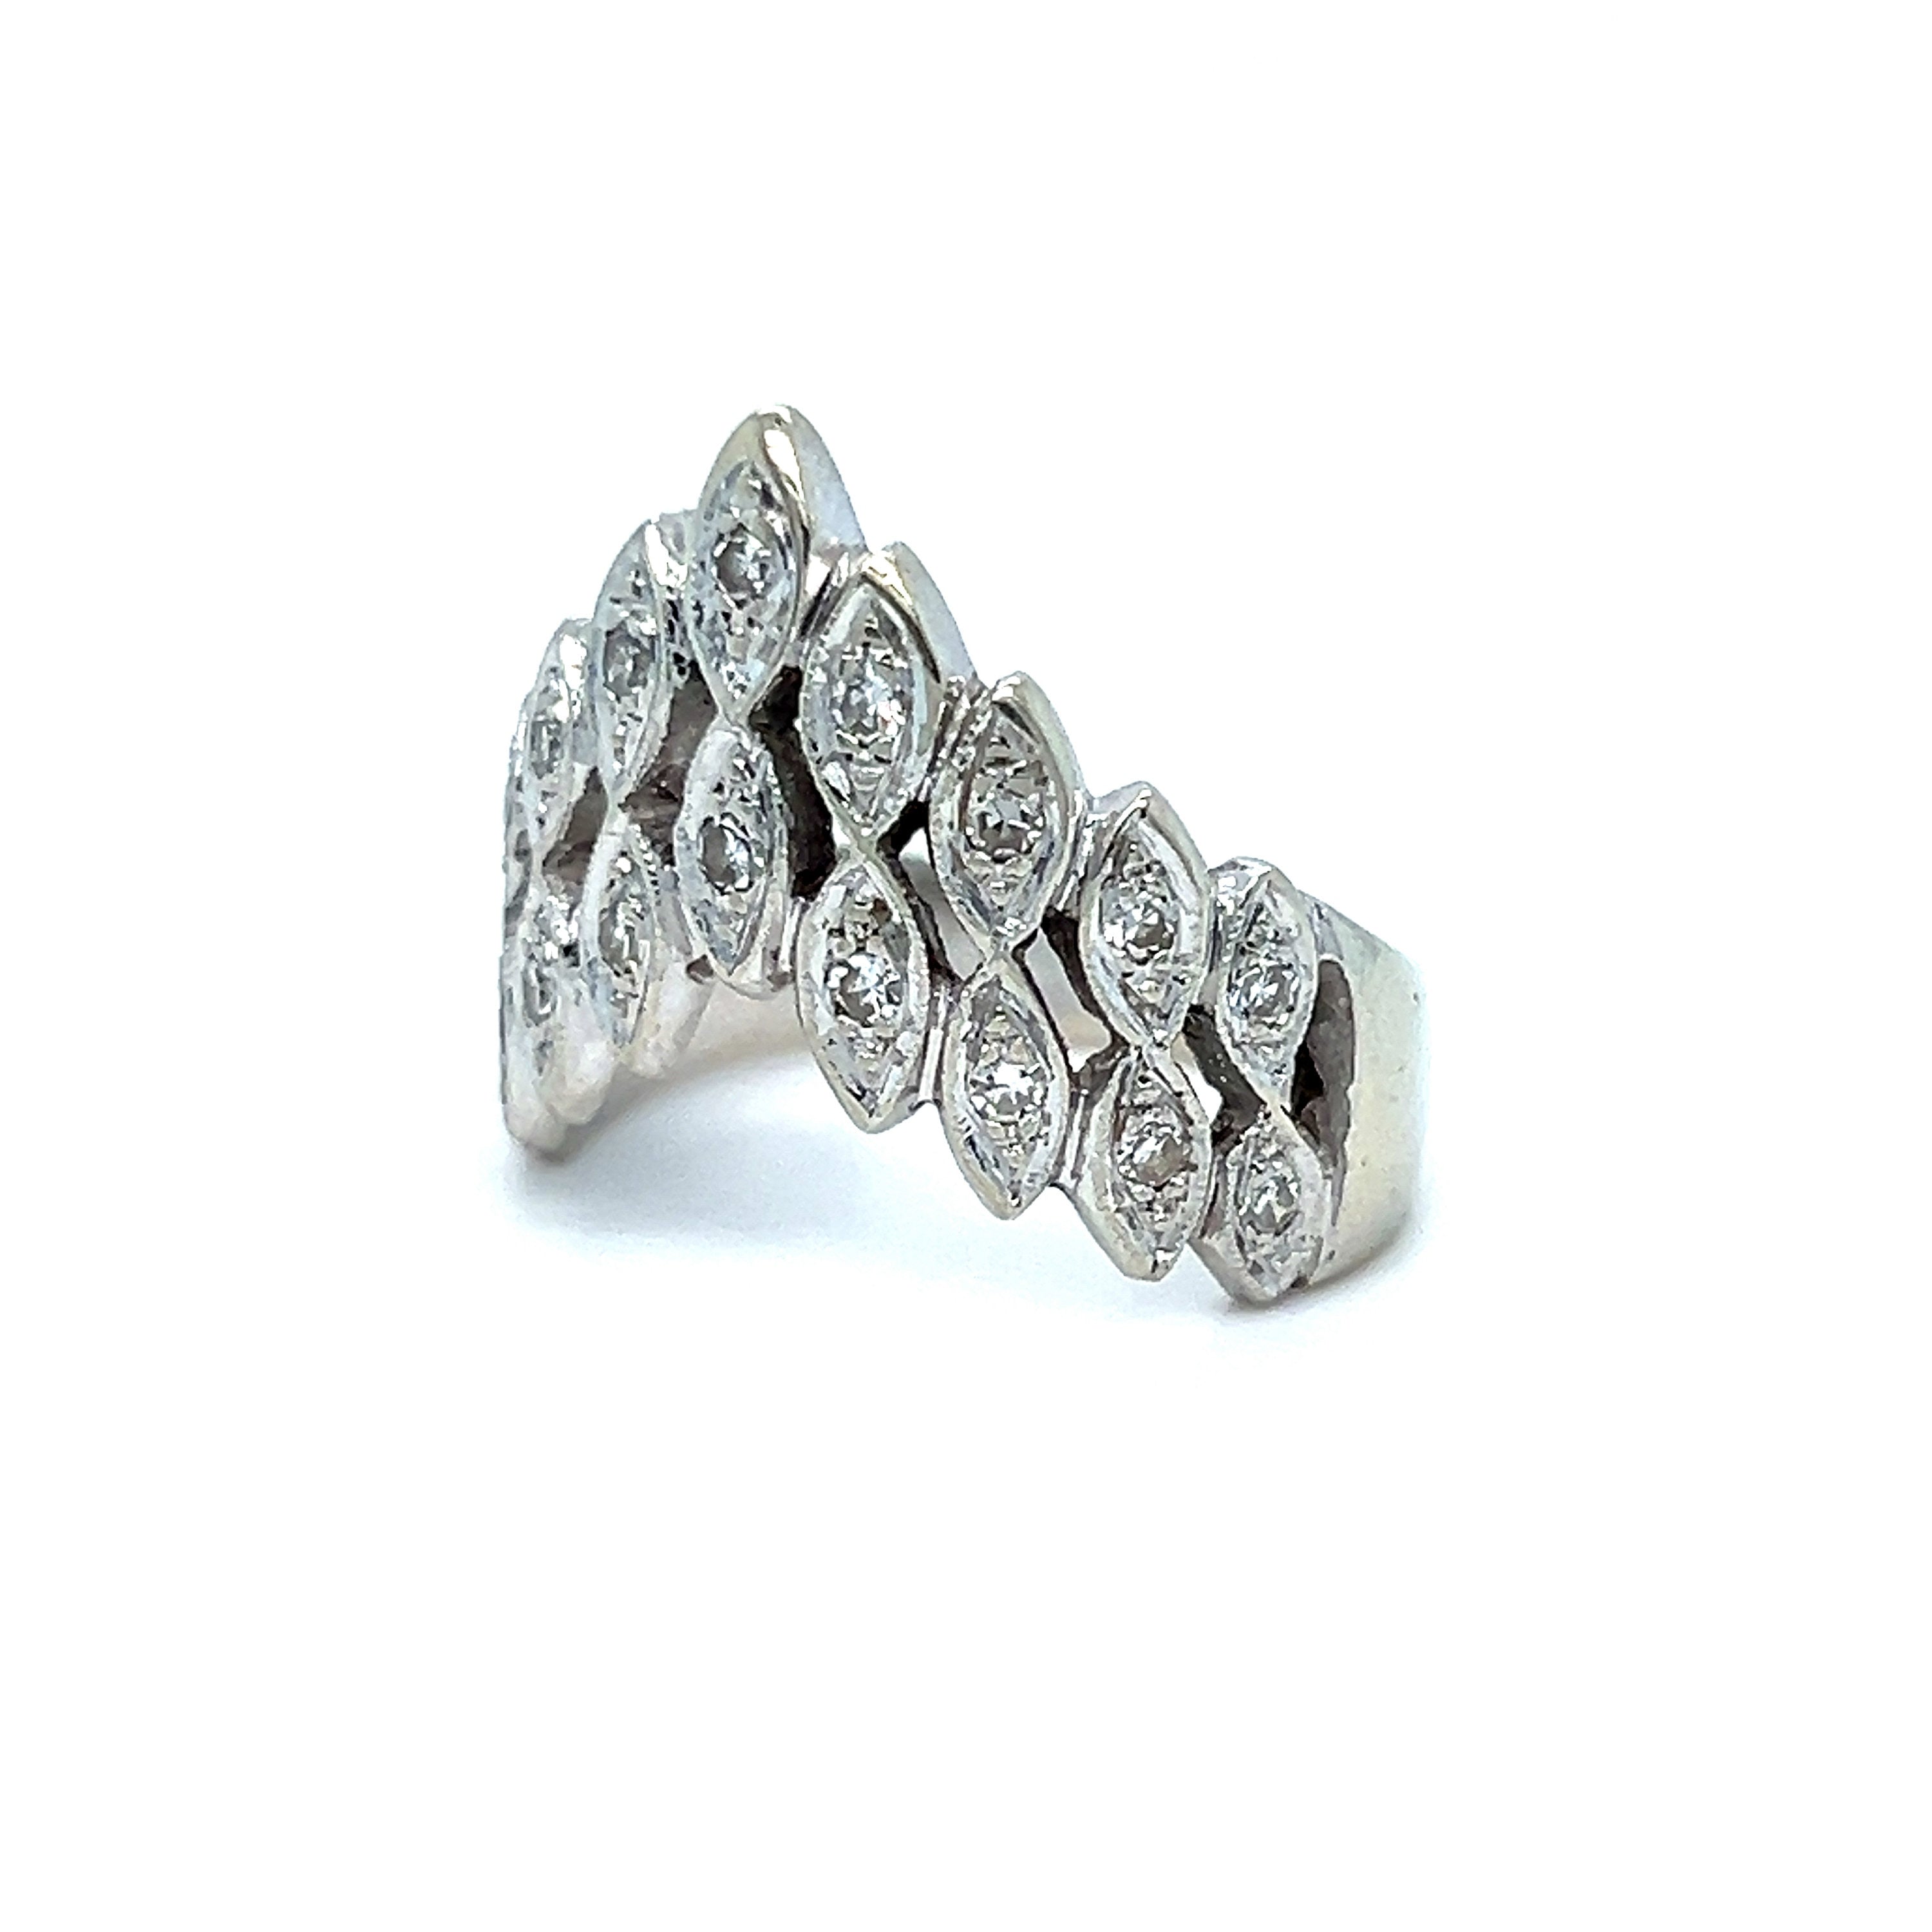 Vintage Diamond Tiara Ring in 14K White Gold - 0.36ct.